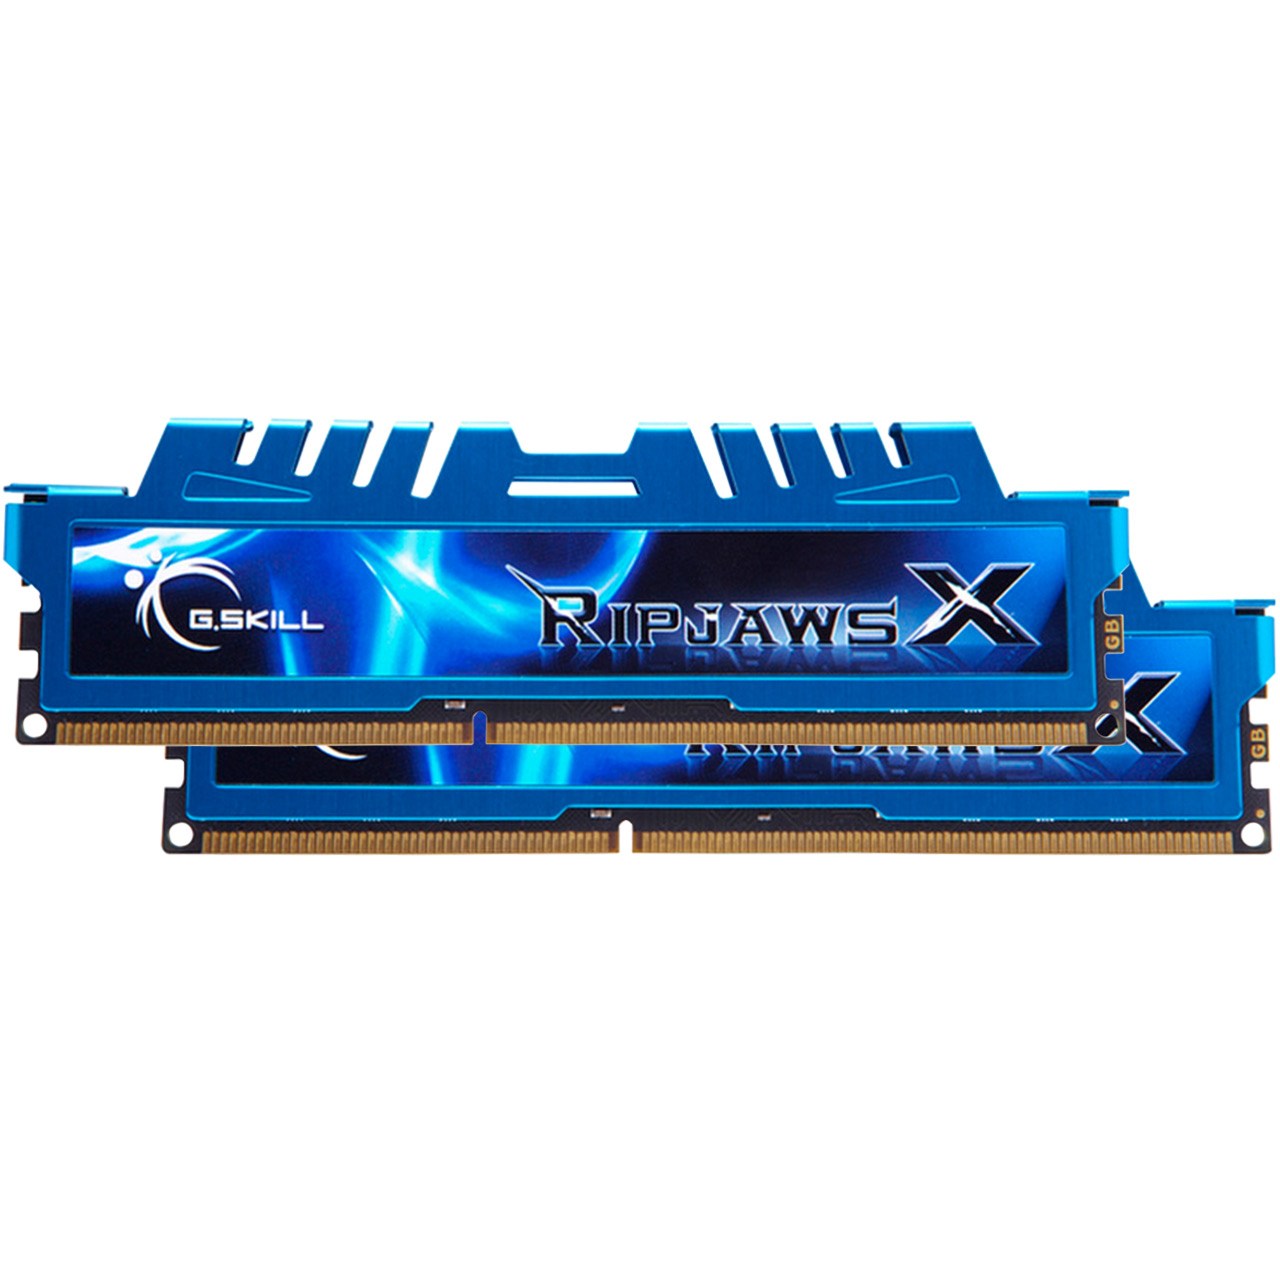 رم دسکتاپ DDR3 دو کاناله 2400 مگاهرتز CL11 جی اسکیل مدل Ripjaws X ظرفیت 16 گیگابایت